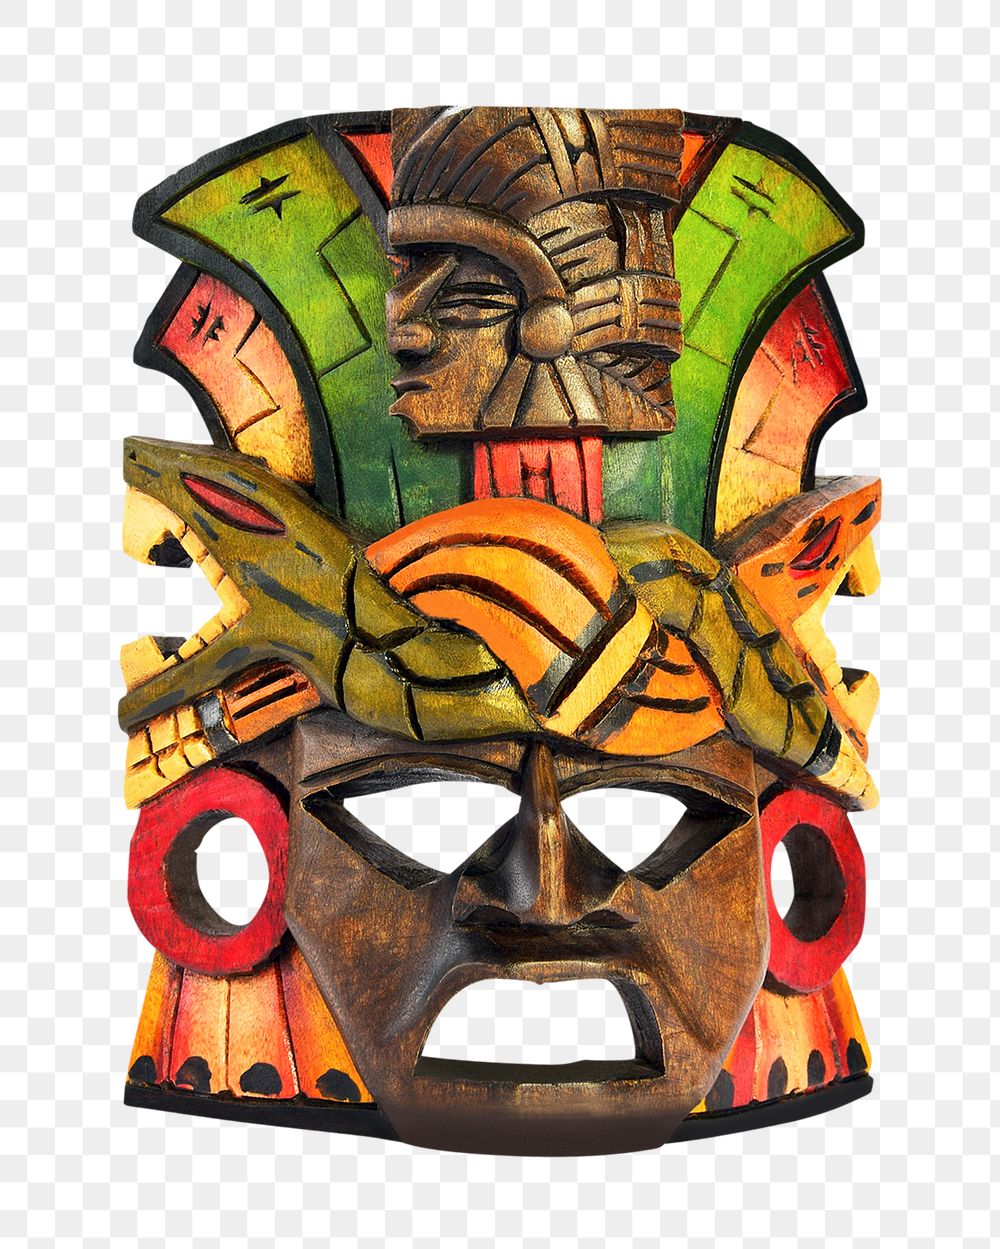 Tribal mask png sticker, transparent background 